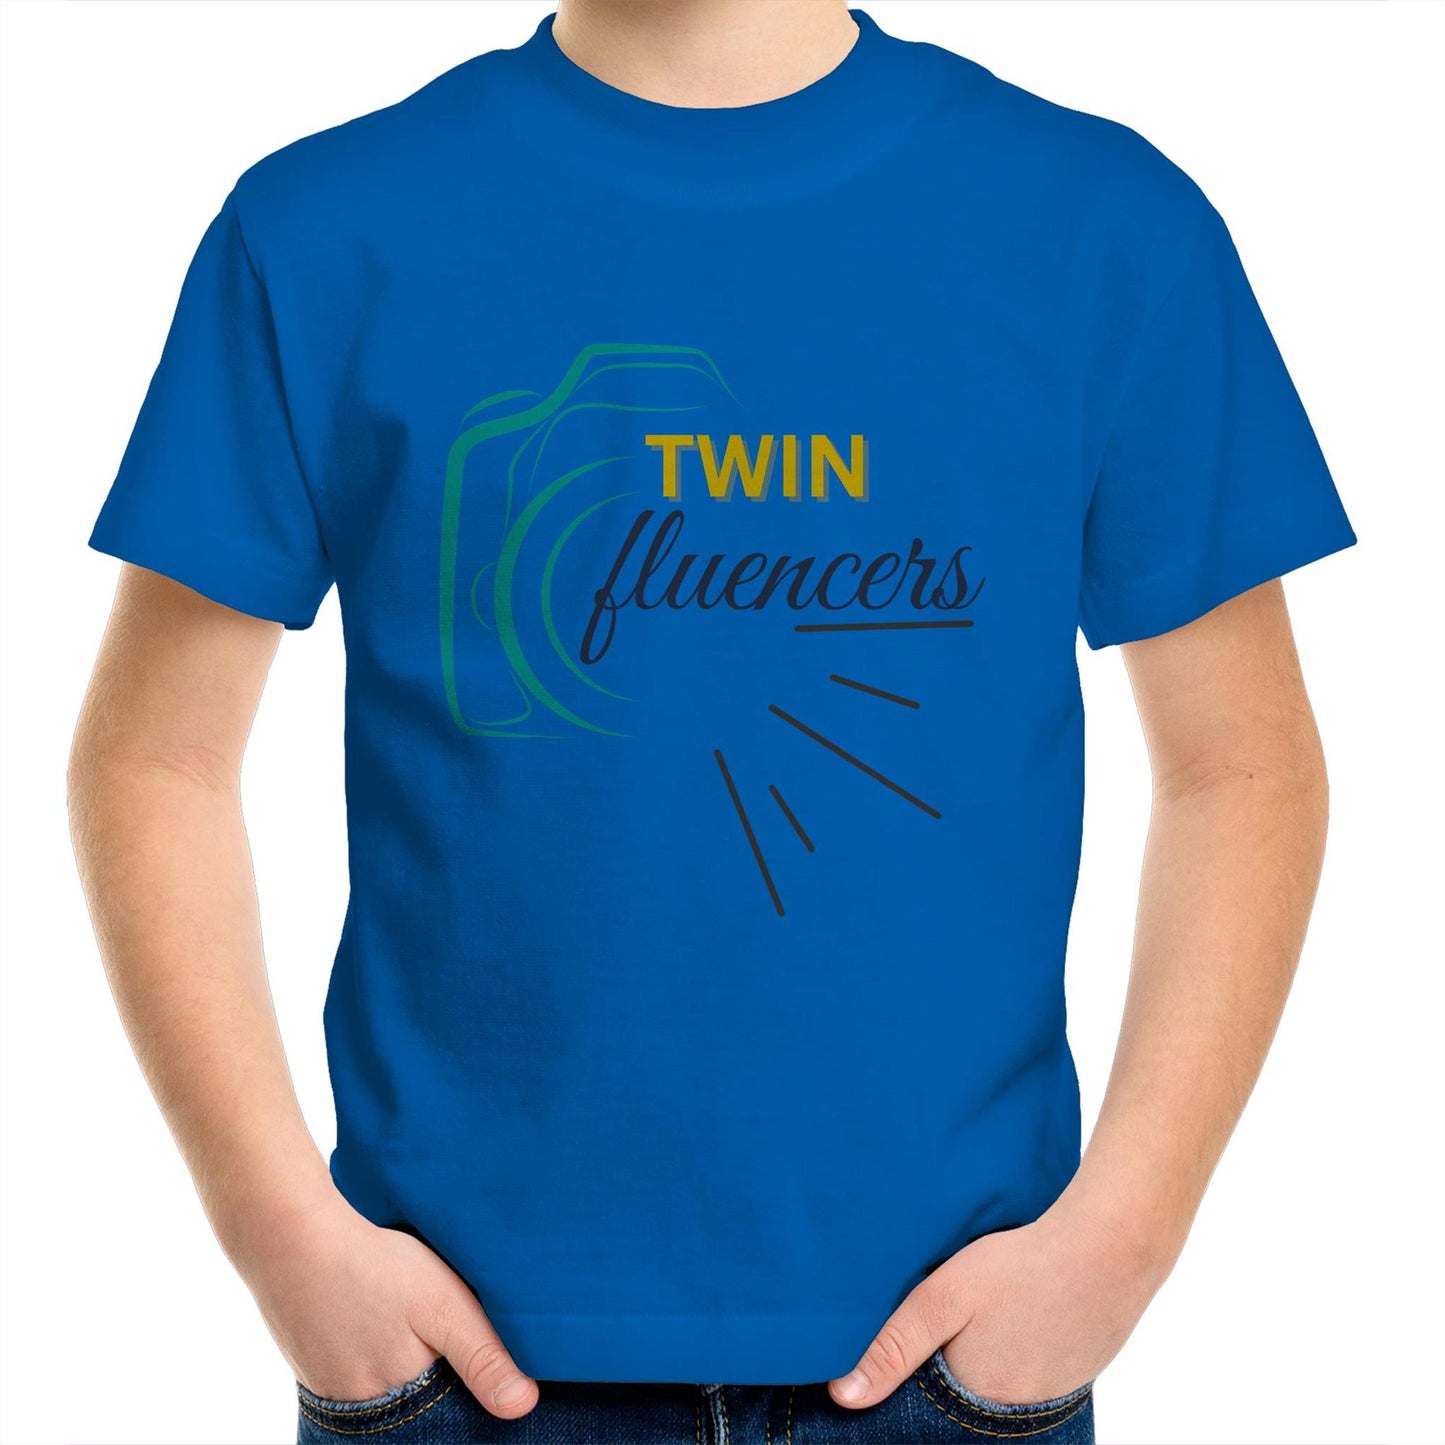 Twin Fluencer Kid's T-Shirt